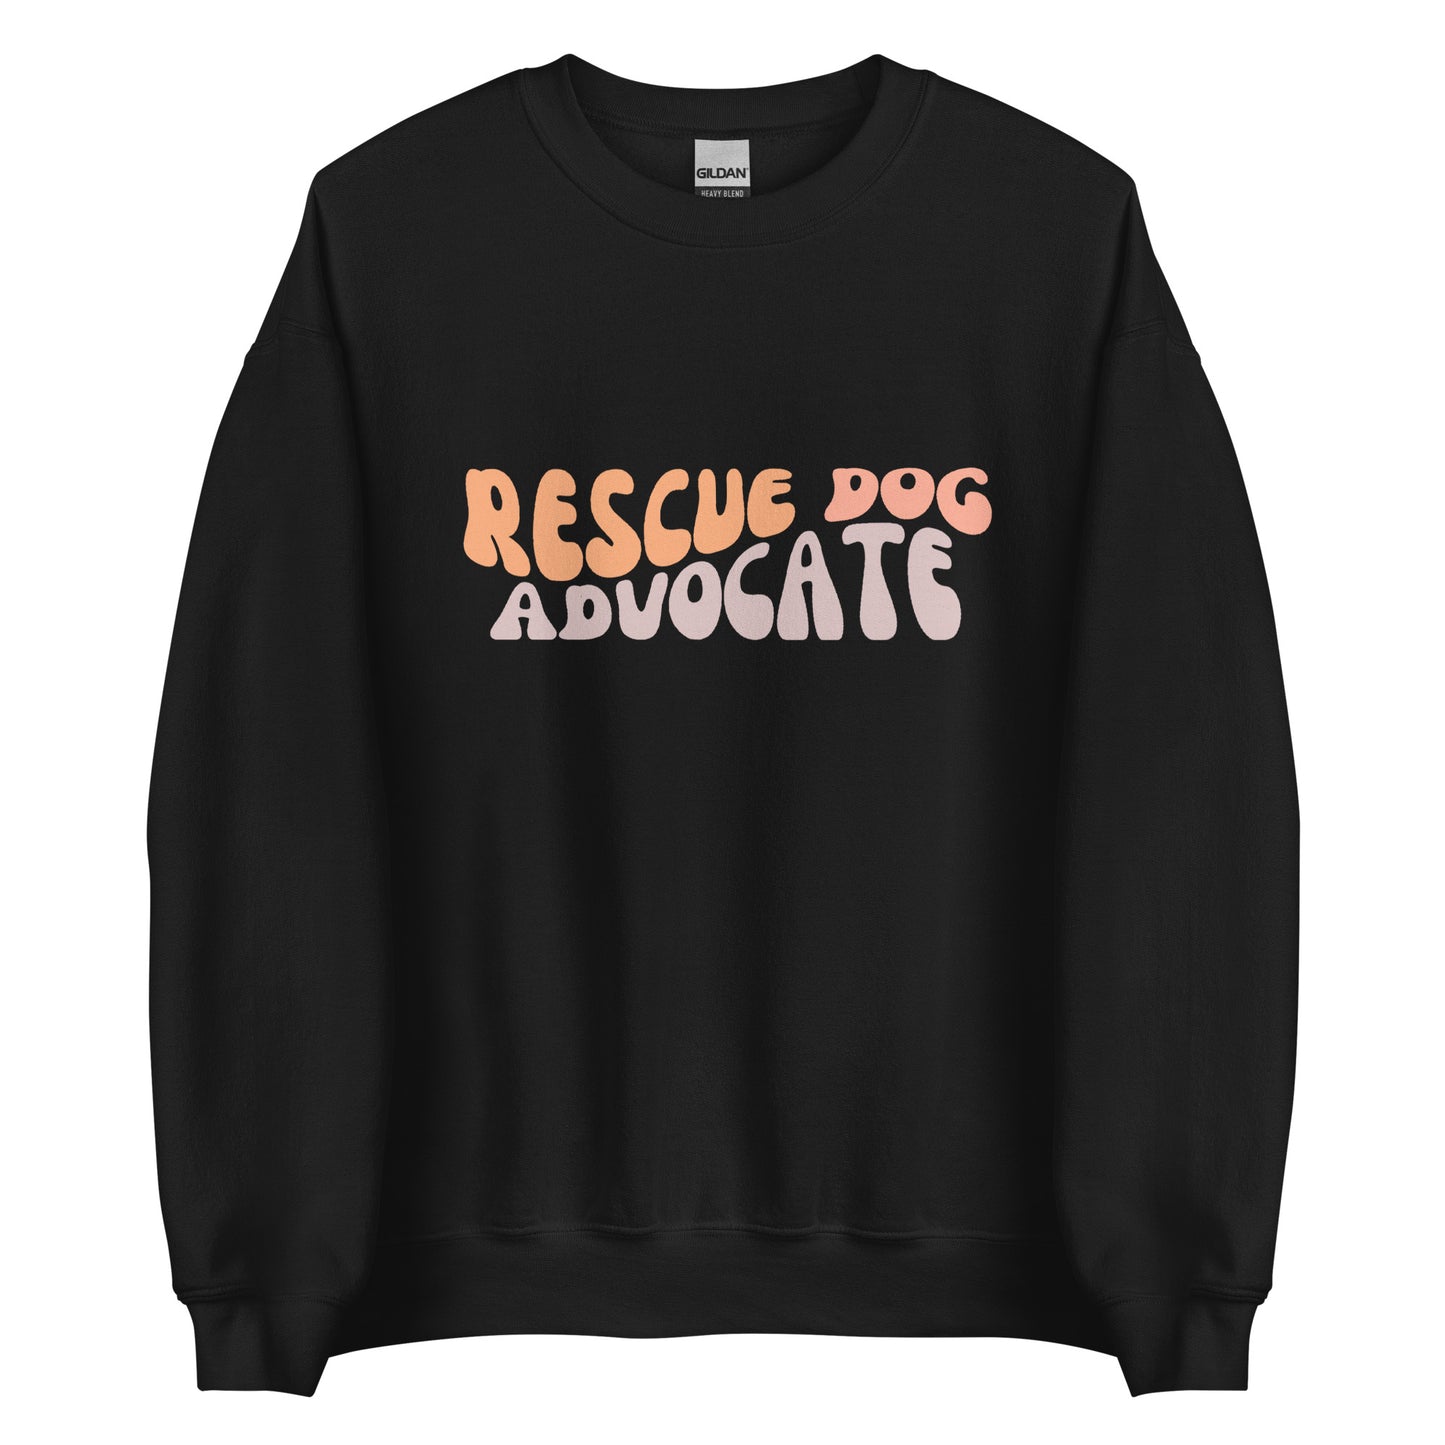 The Rescue Dog Advocate Crew